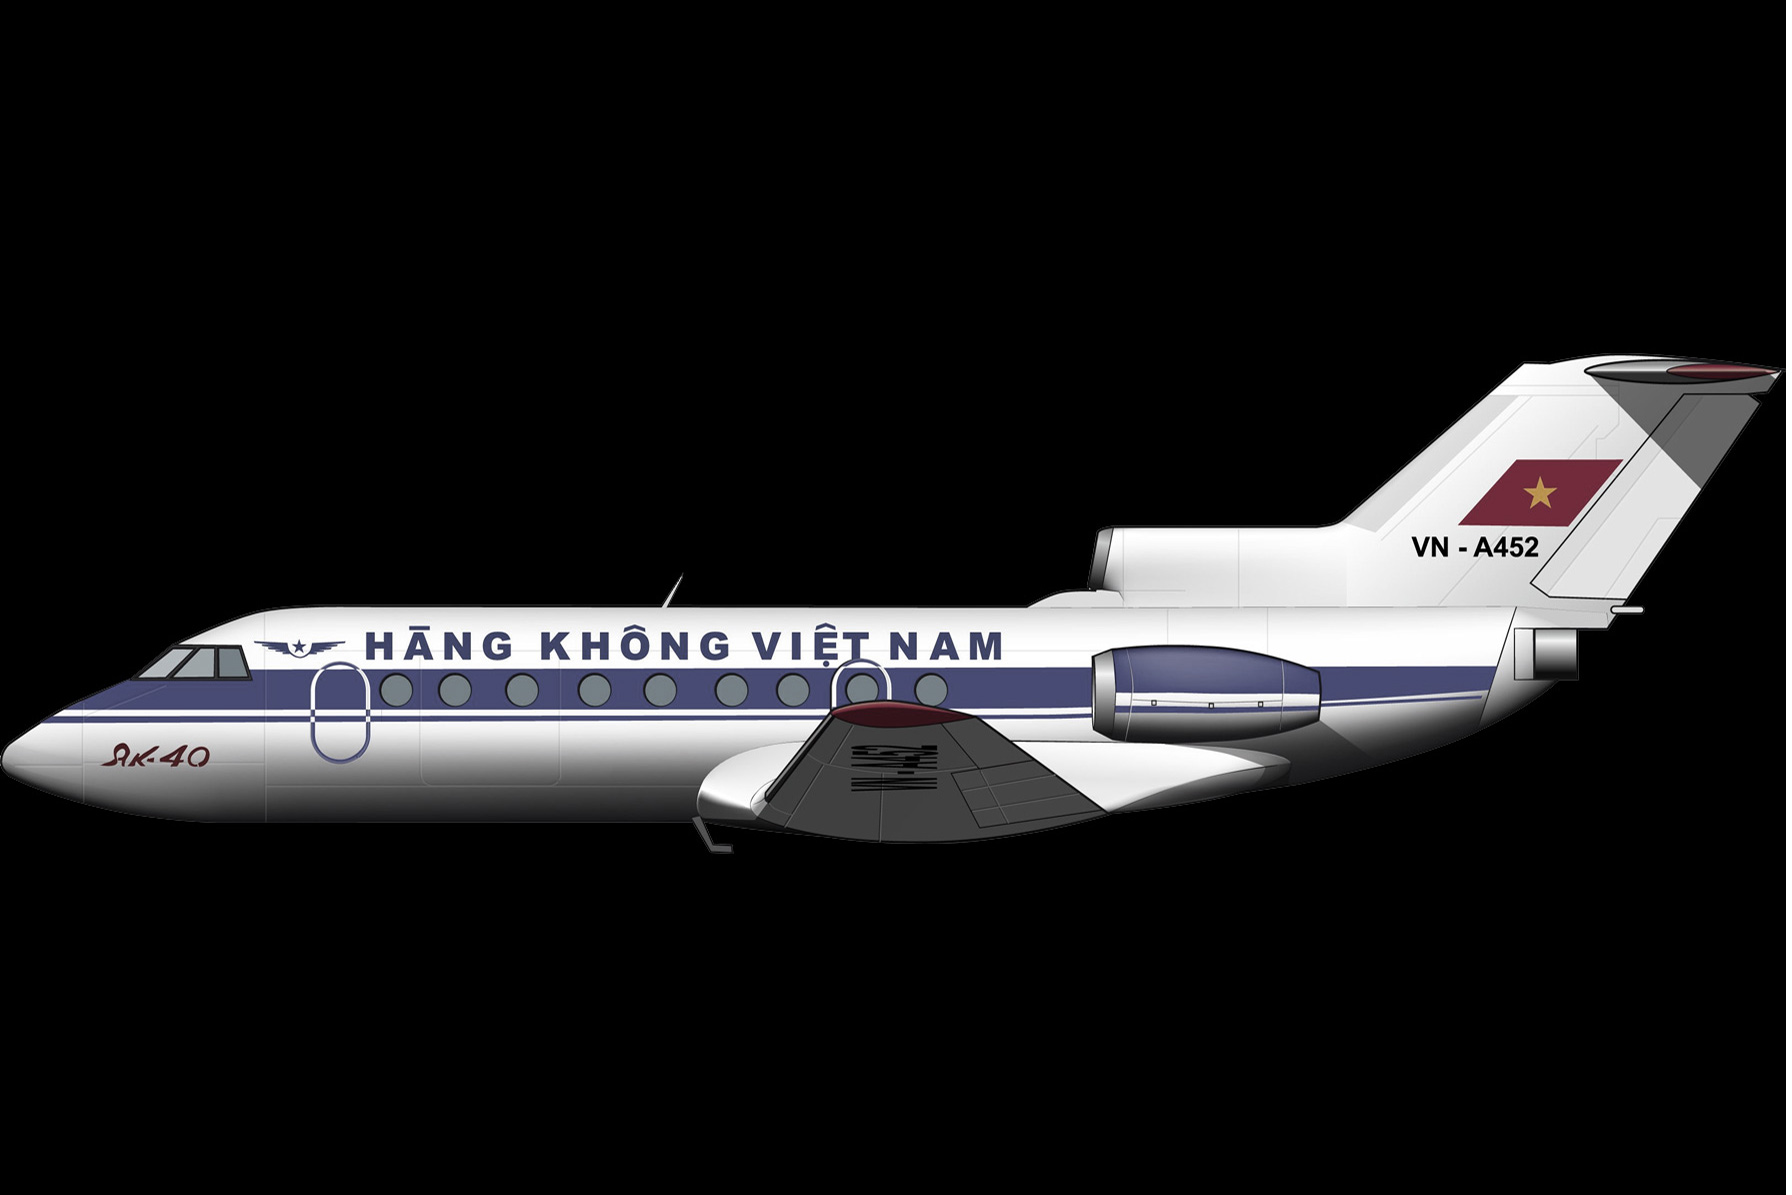 Hồi ức đau đớn về tai họa kép của hàng không Việt Nam năm 1992